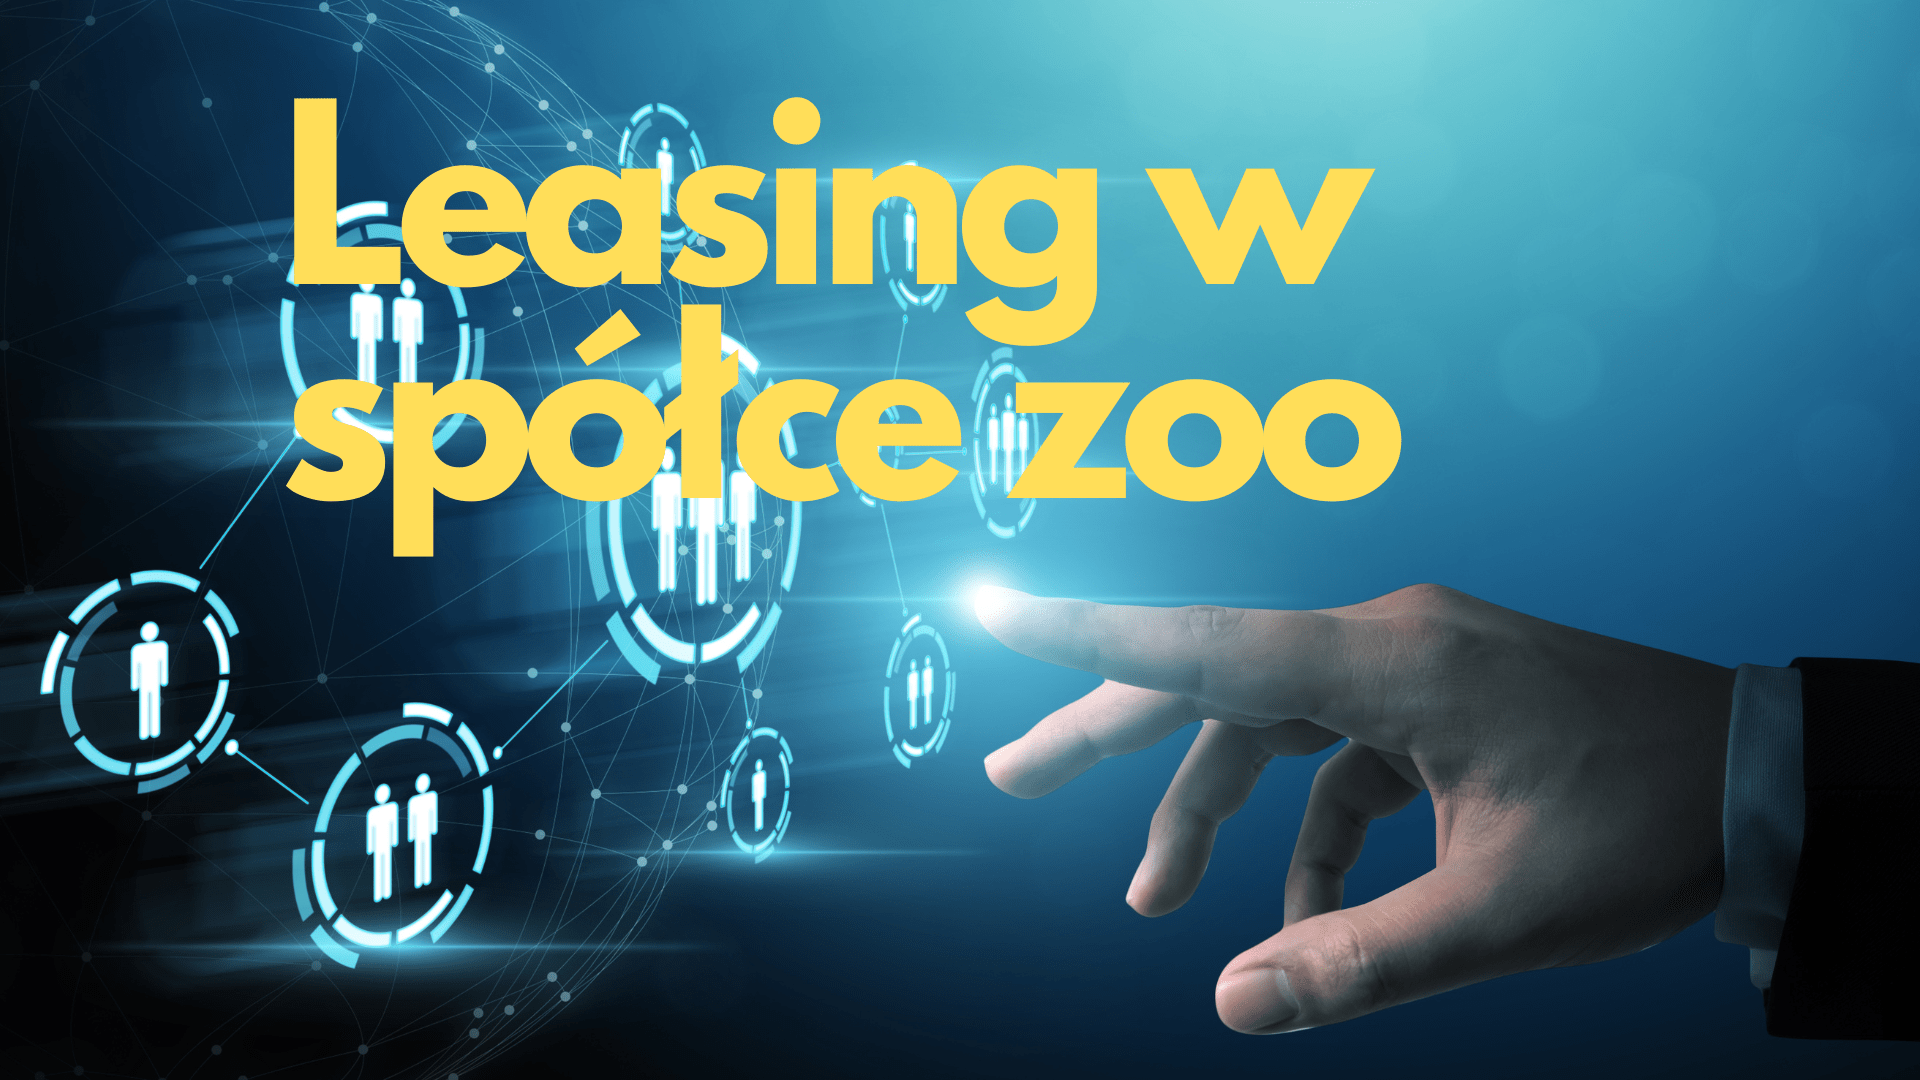 Leasing w spółce zoo – ile można odliczyć? Jakie są zasady?